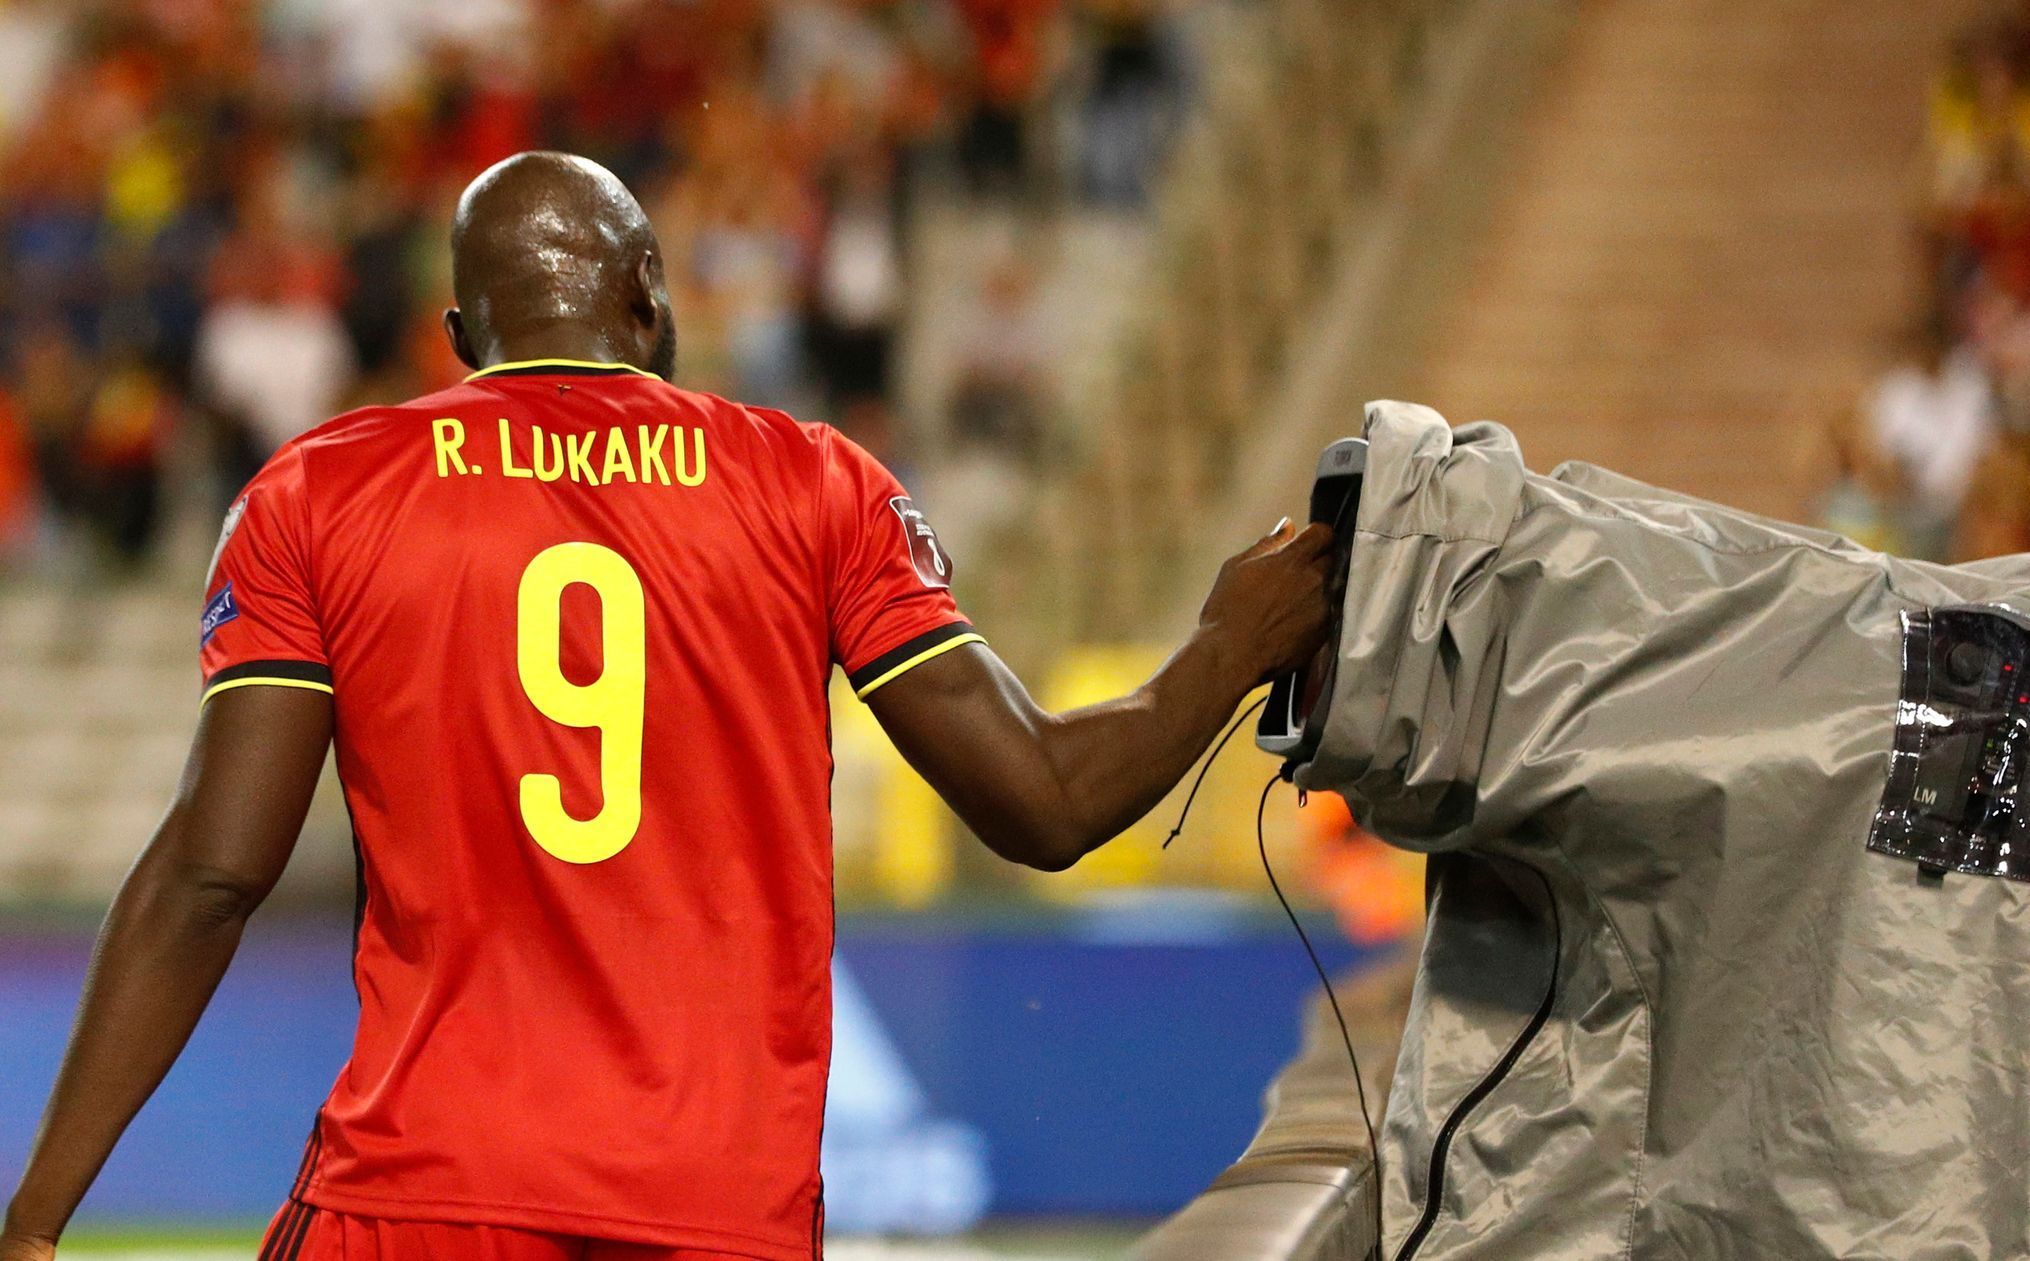 Romelu Lukaku slaví gól v zápase skupiny E kvalifikace MS Belgie - Česko